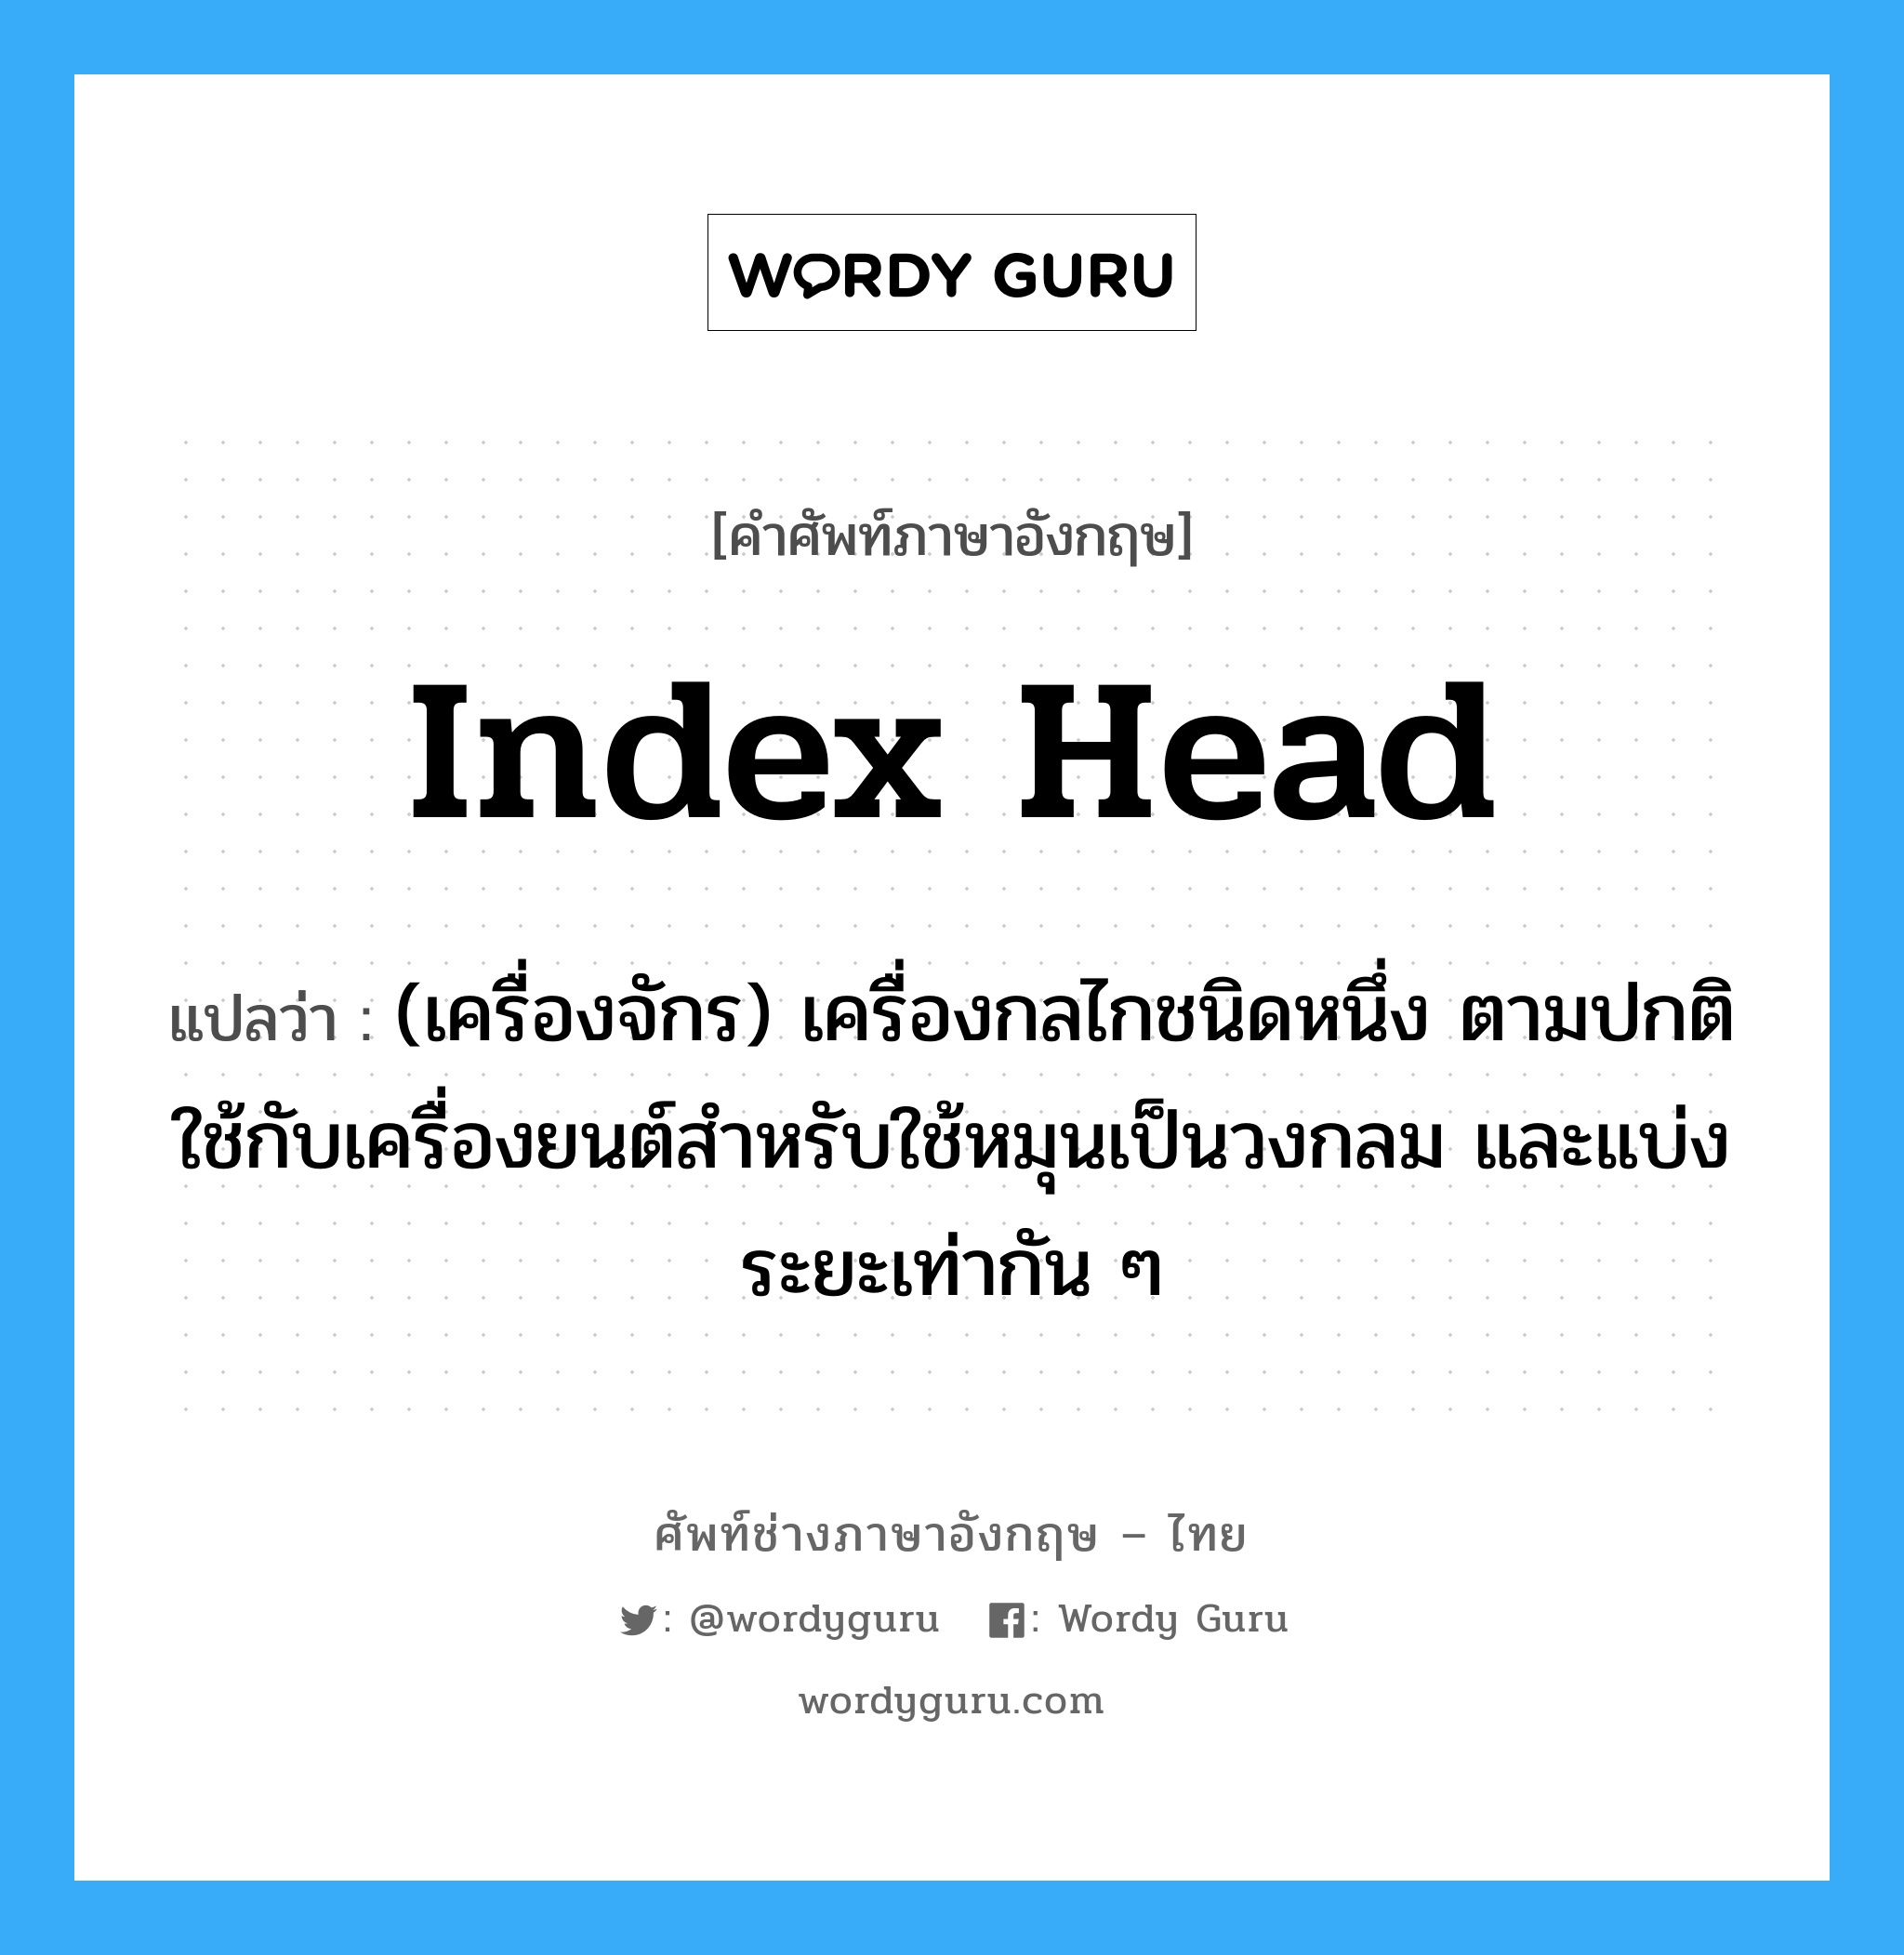 index head แปลว่า?, คำศัพท์ช่างภาษาอังกฤษ - ไทย index head คำศัพท์ภาษาอังกฤษ index head แปลว่า (เครื่องจักร) เครื่องกลไกชนิดหนึ่ง ตามปกติใช้กับเครื่องยนต์สำหรับใช้หมุนเป็นวงกลม และแบ่งระยะเท่ากัน ๆ